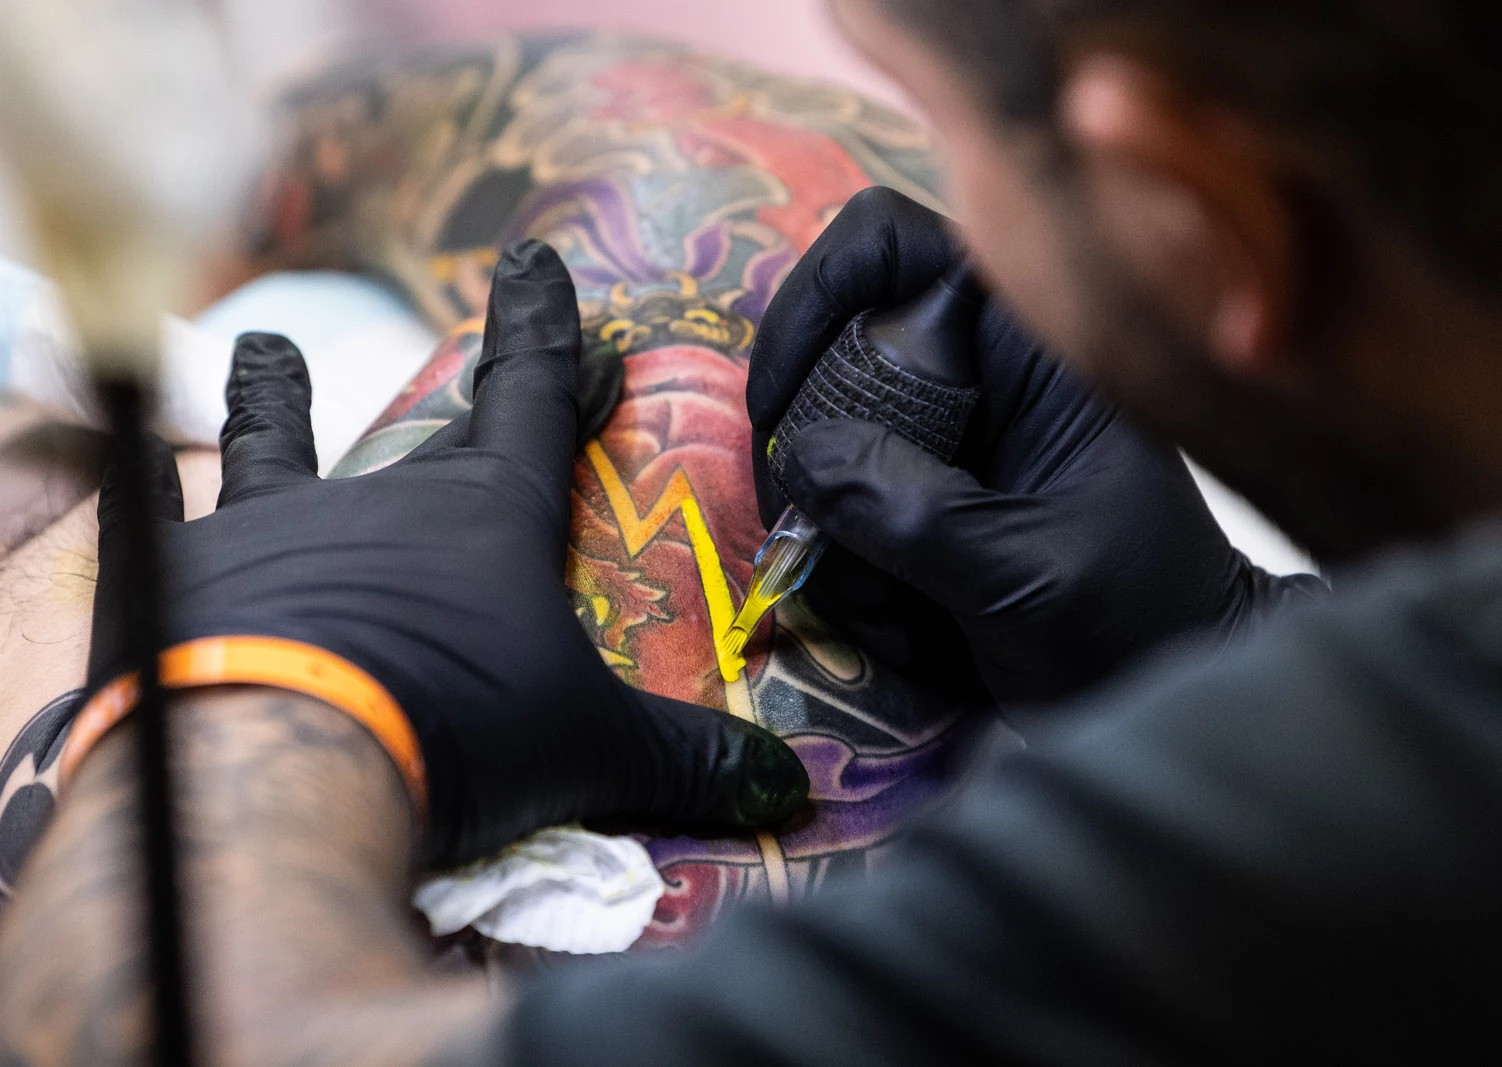 Tattoo artist sees bump in desire to erase hateful skin art  KX NEWS